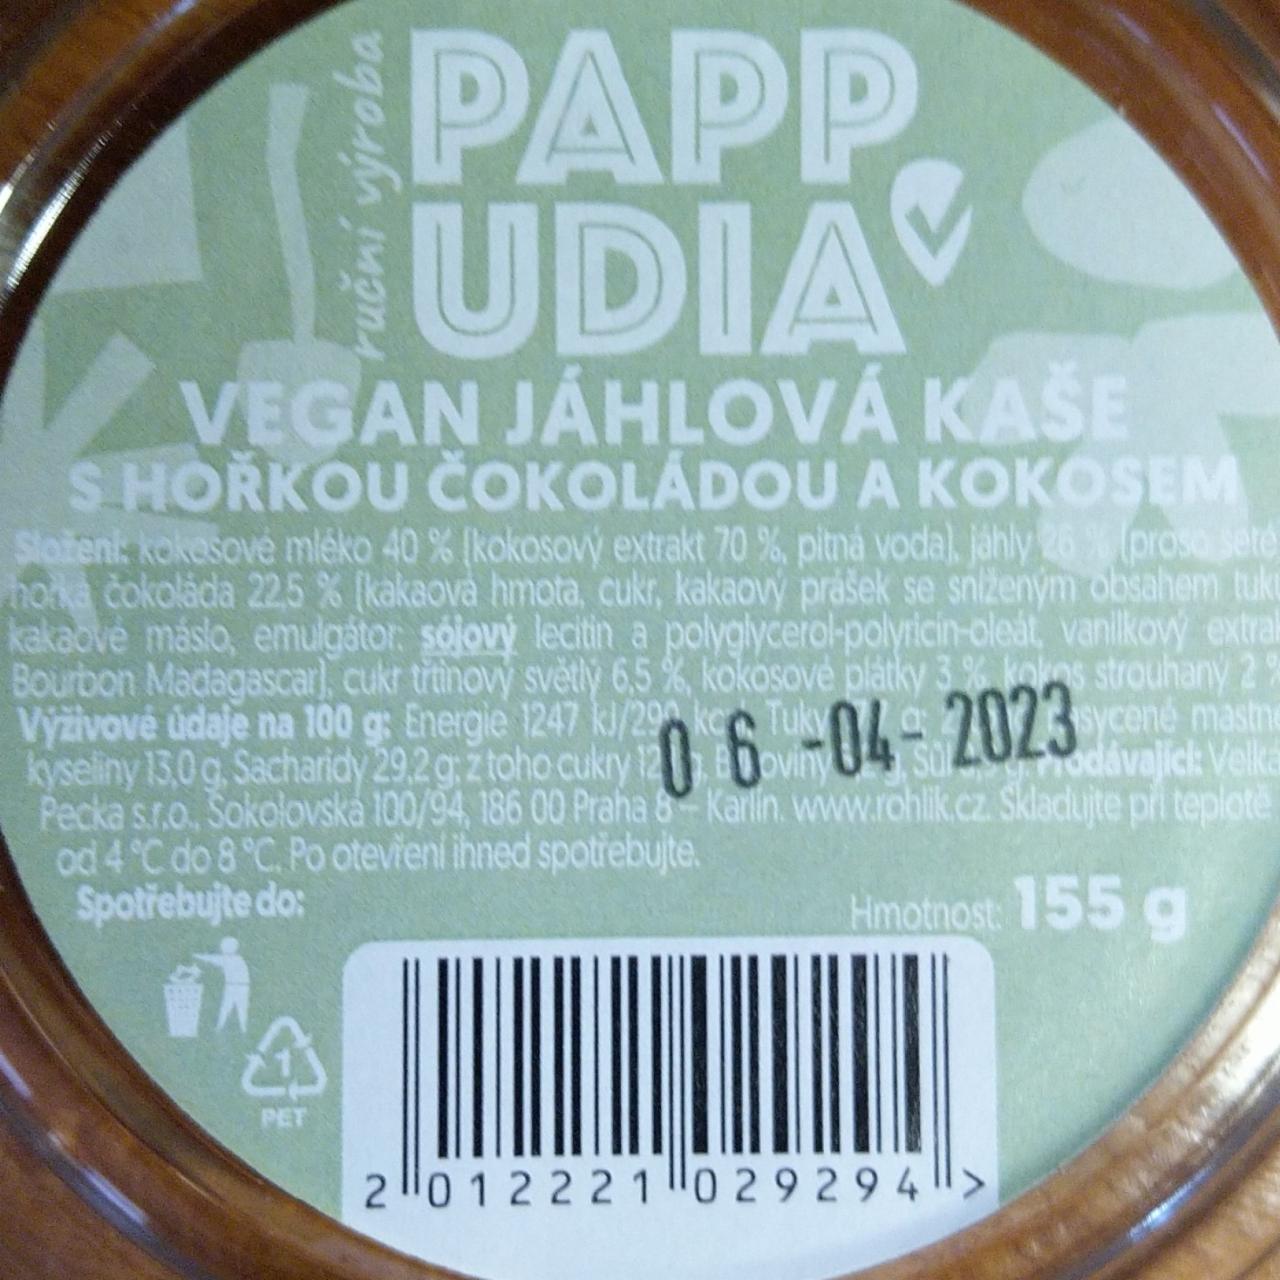 Fotografie - Vegan Jáhlová kaše s hořkou čokoládou a kokosem Pappudia